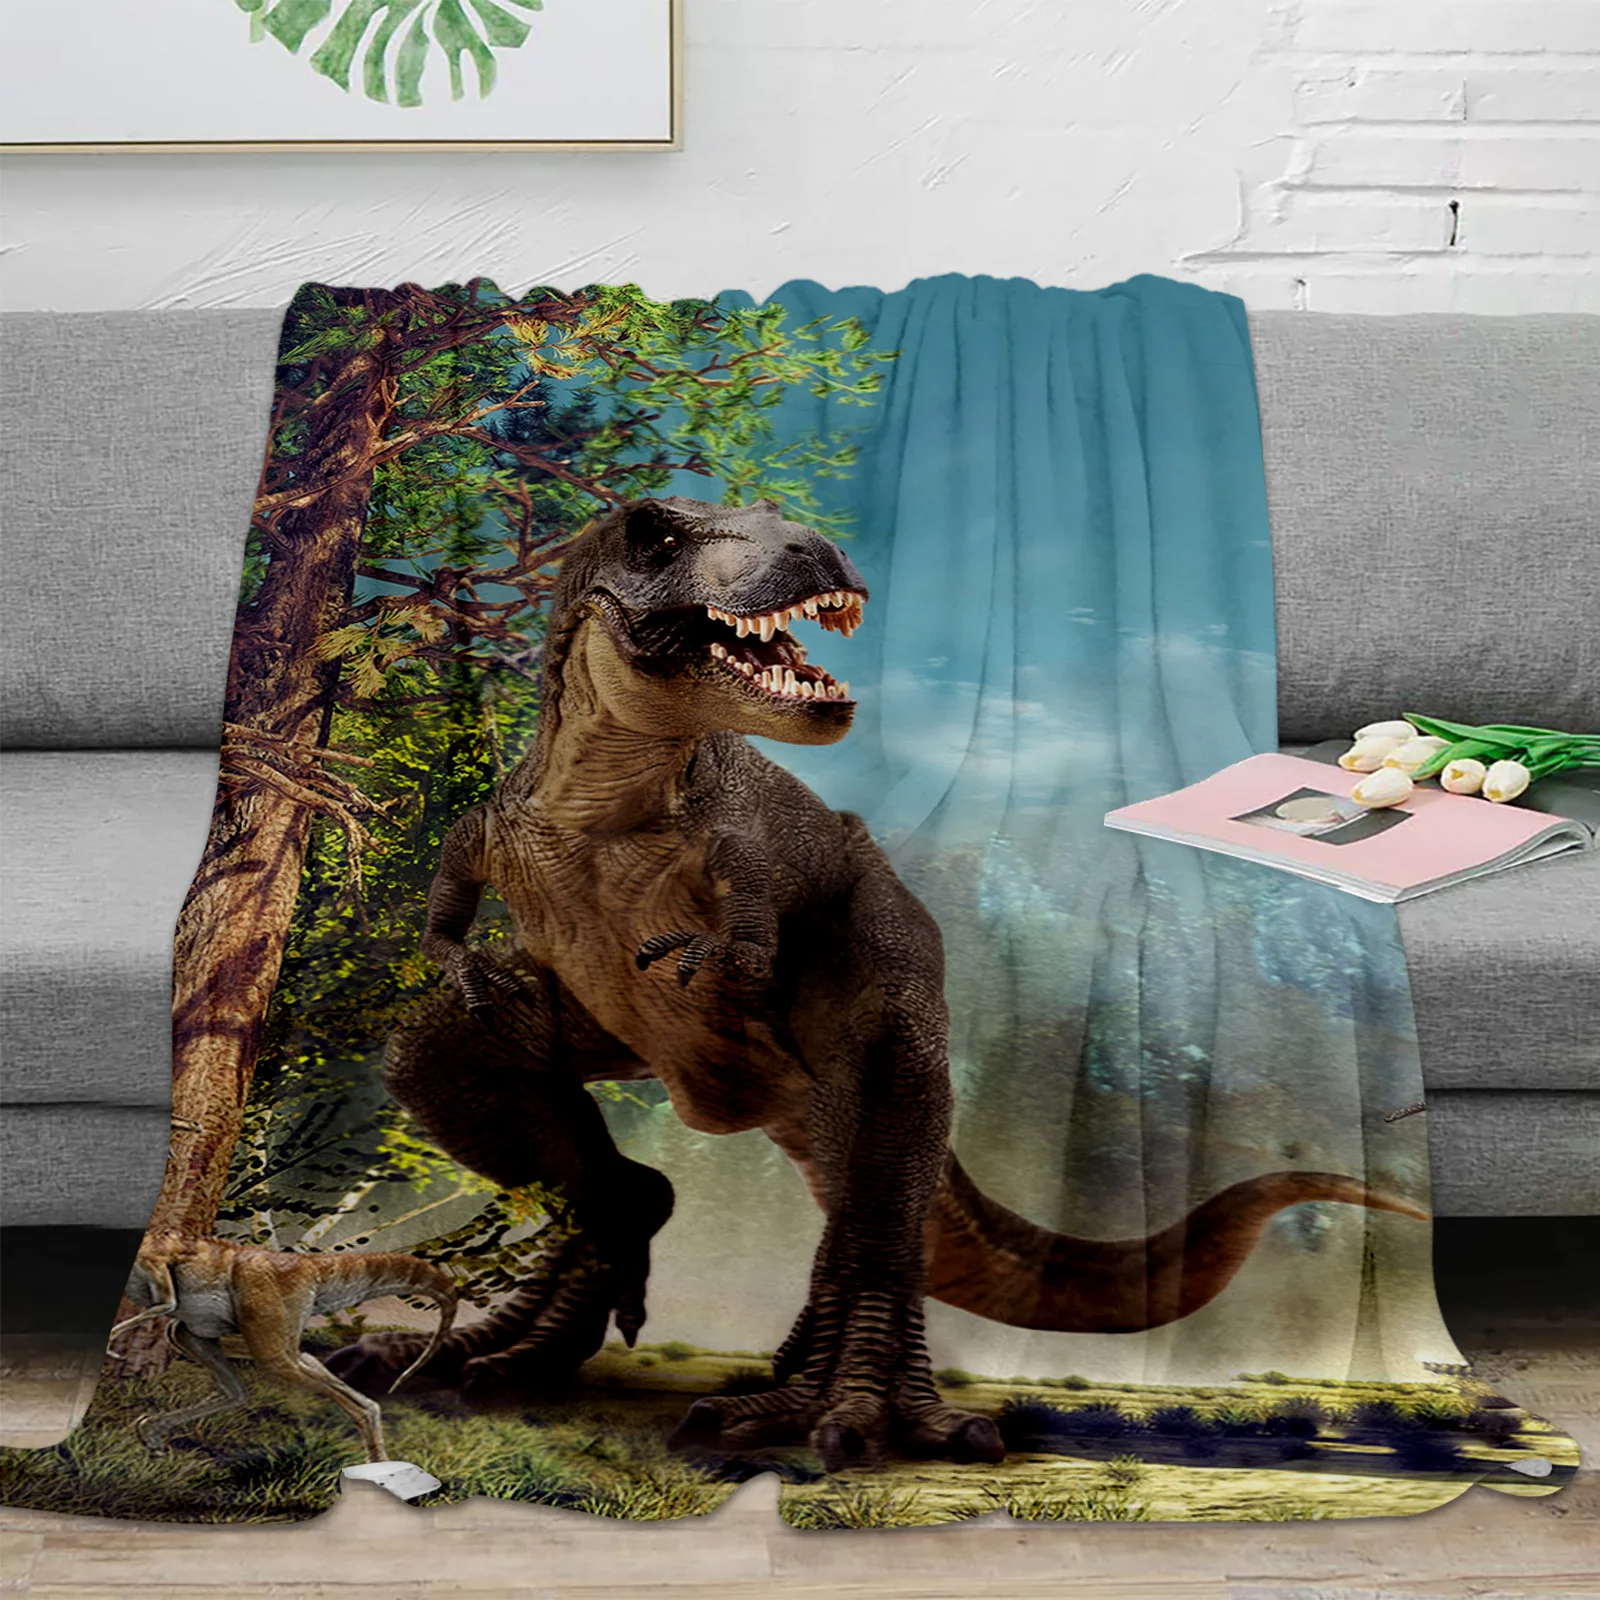 

3D Динозавр из Юрского периода, плед с изображением Девы леса, теплое плюшевое одеяло, портативное одеяло для путешествий, кемпинга, пикника